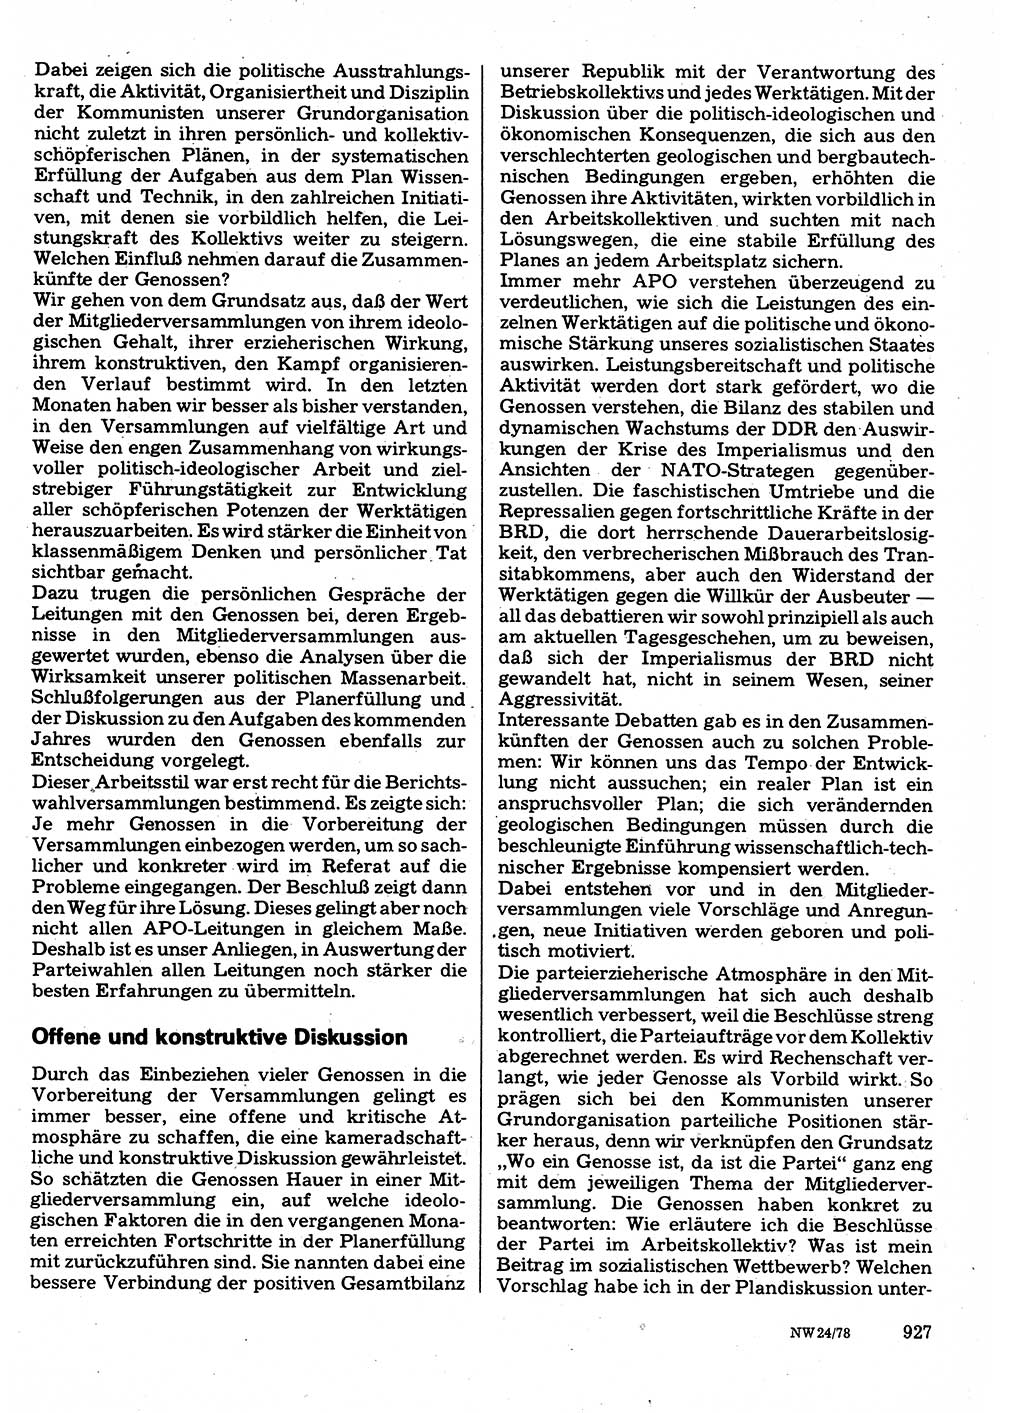 Neuer Weg (NW), Organ des Zentralkomitees (ZK) der SED (Sozialistische Einheitspartei Deutschlands) für Fragen des Parteilebens, 33. Jahrgang [Deutsche Demokratische Republik (DDR)] 1978, Seite 927 (NW ZK SED DDR 1978, S. 927)